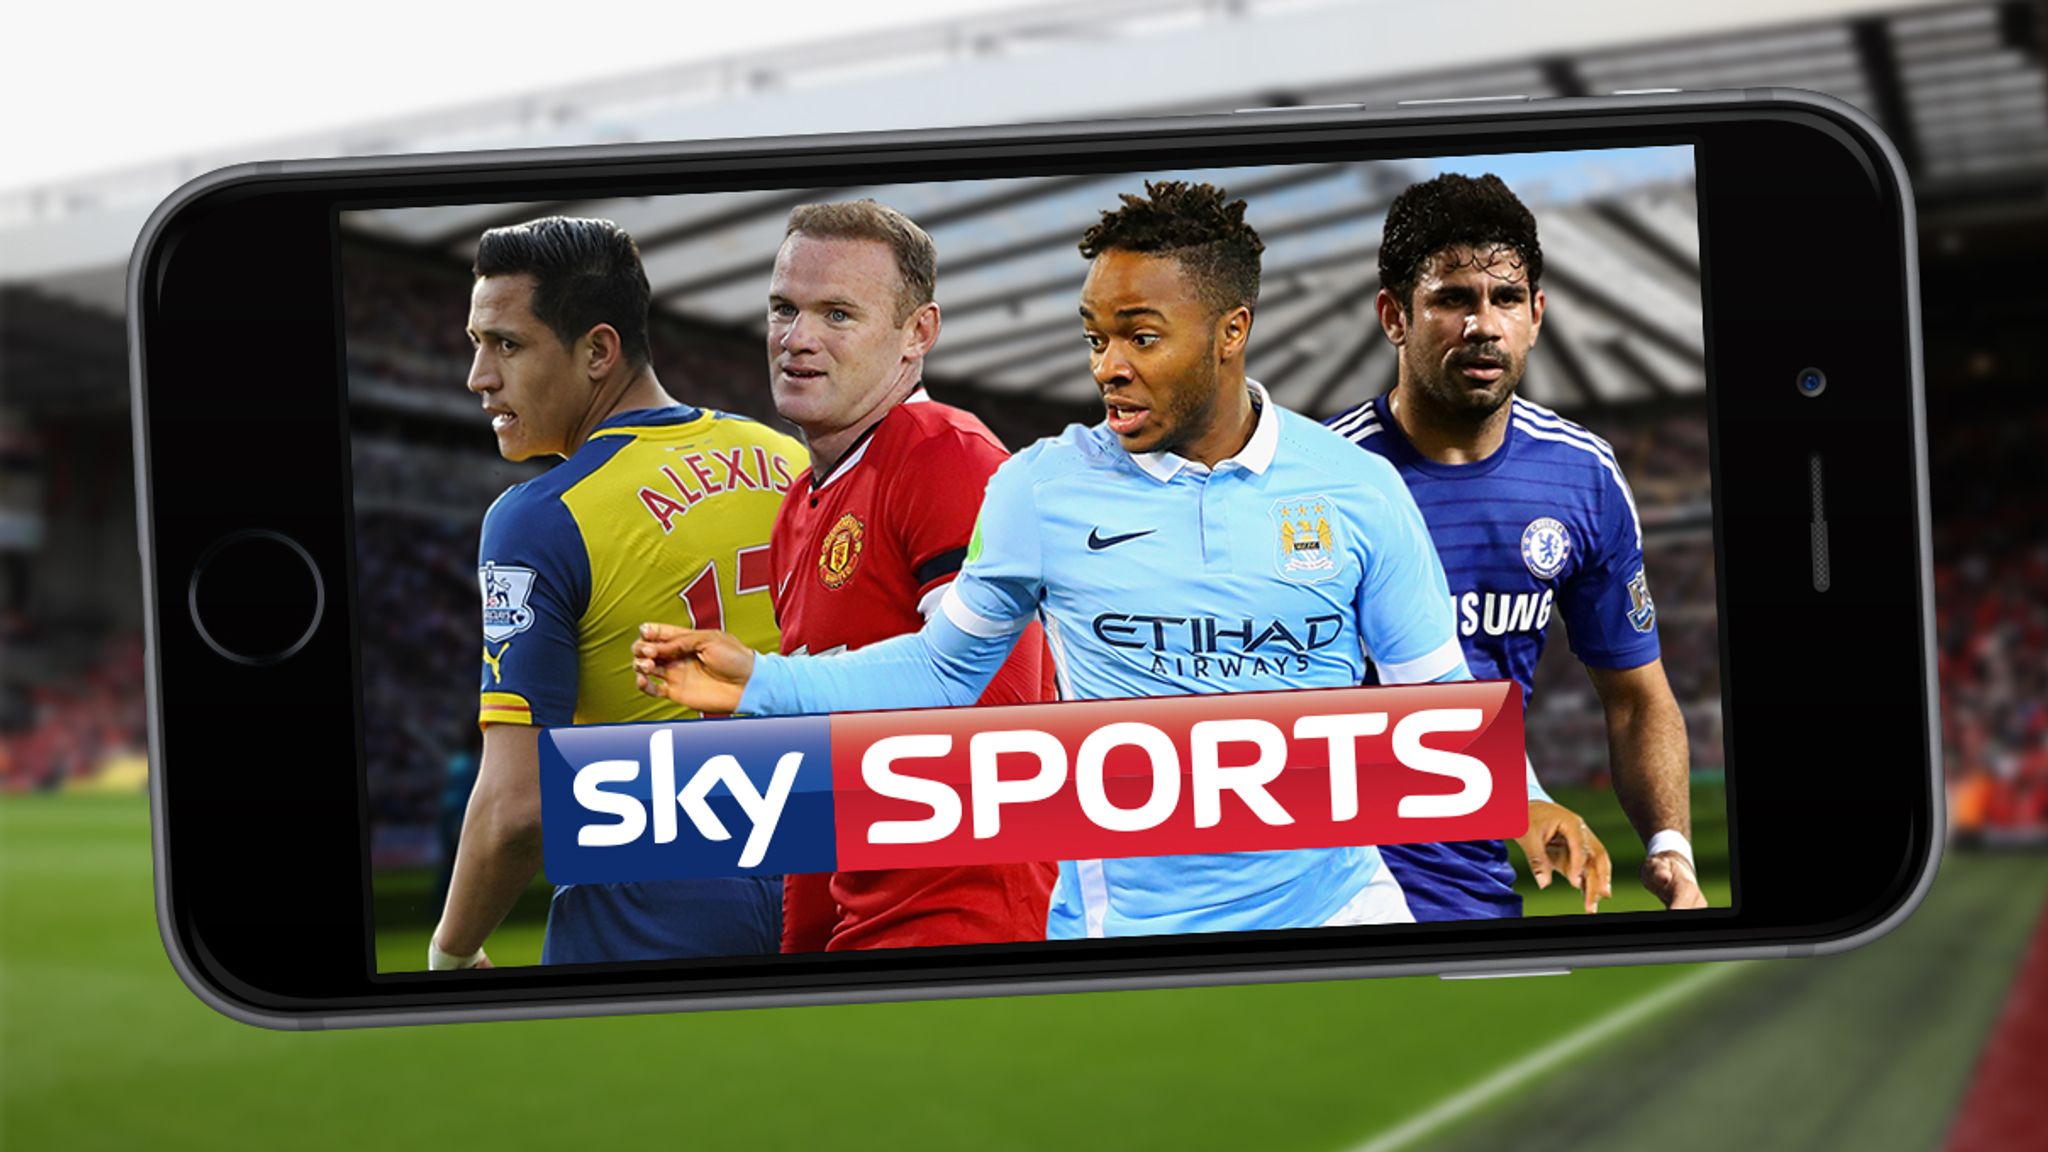 Sky sport live streaming. Sky Sports Premier League. Sky Sports Football. Sky Sports Premier League uk. Sky Sports Football uk.